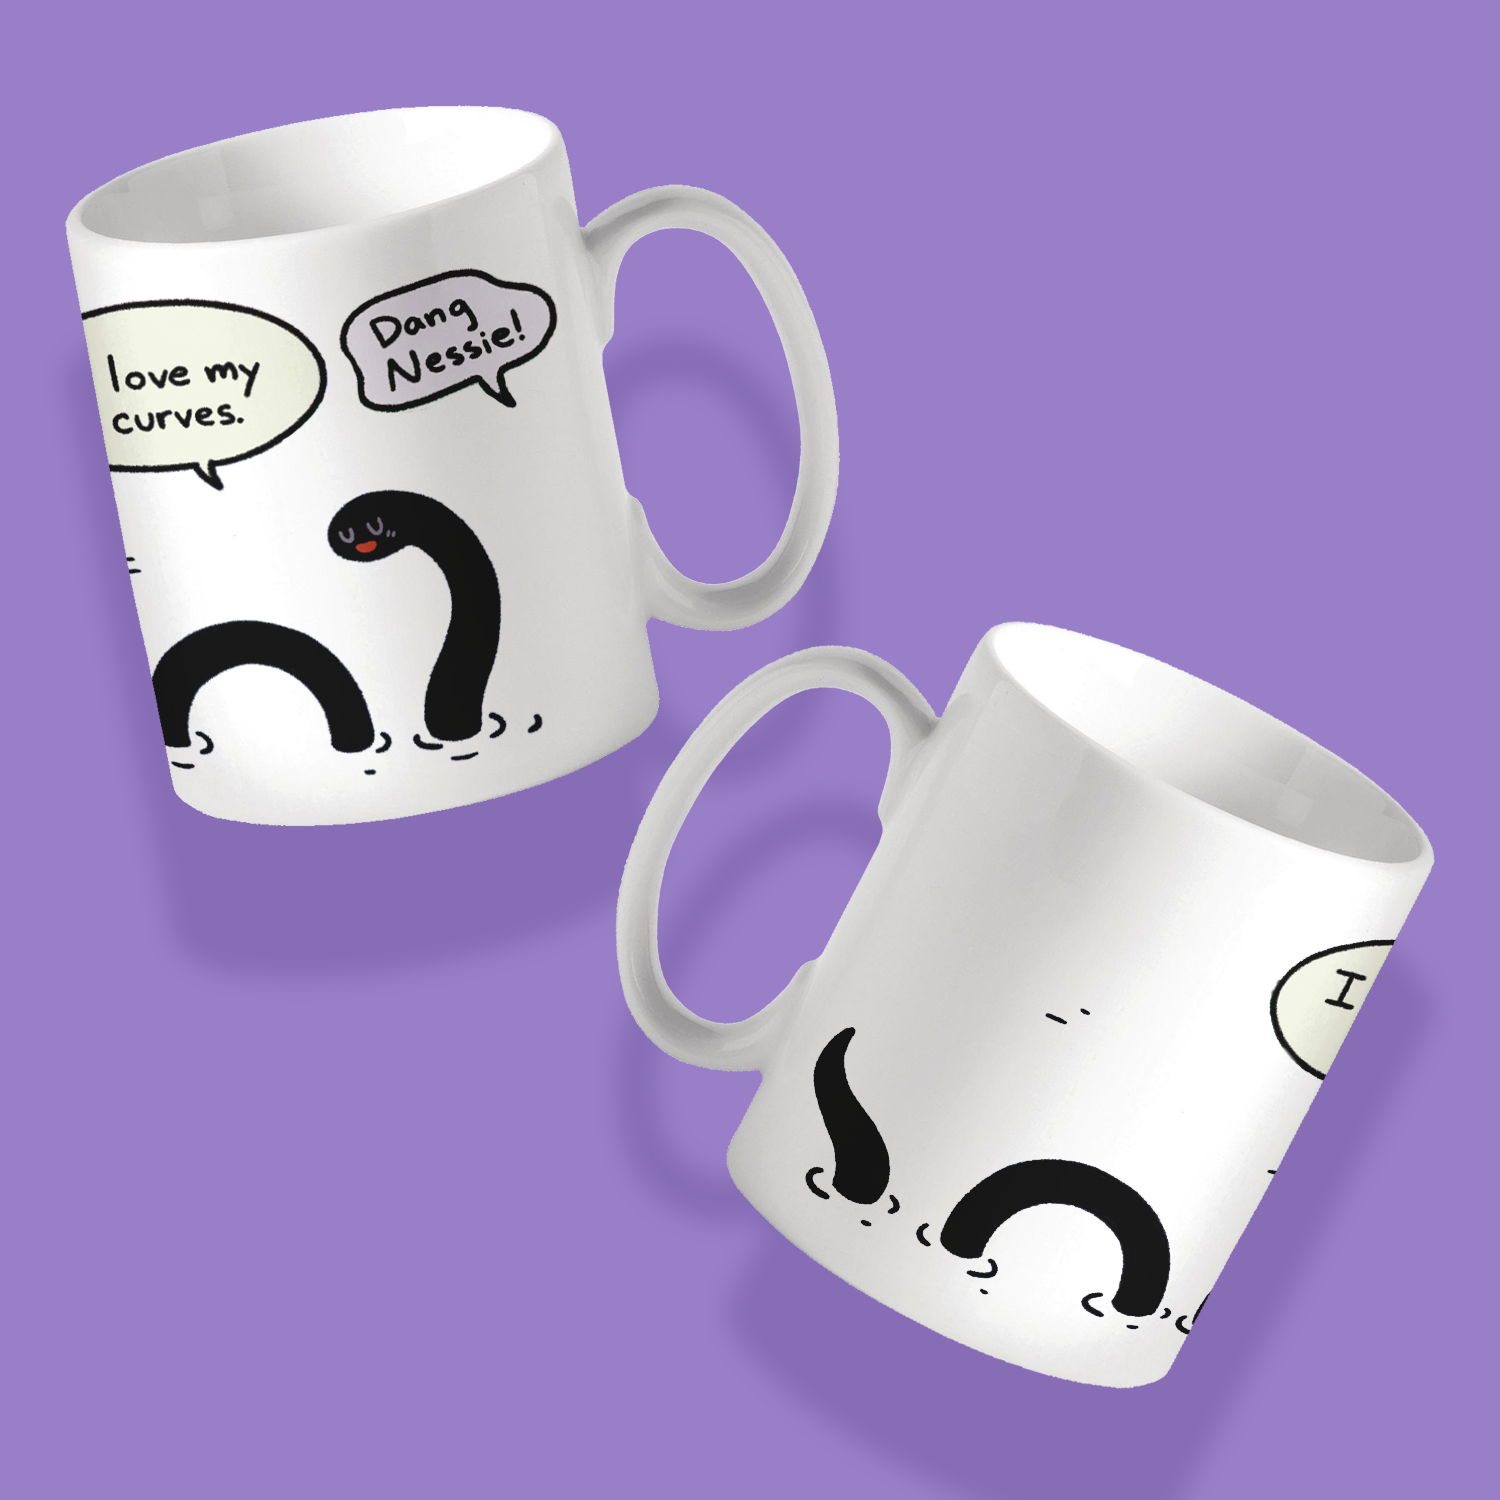 "Dang Nessie!" Mug